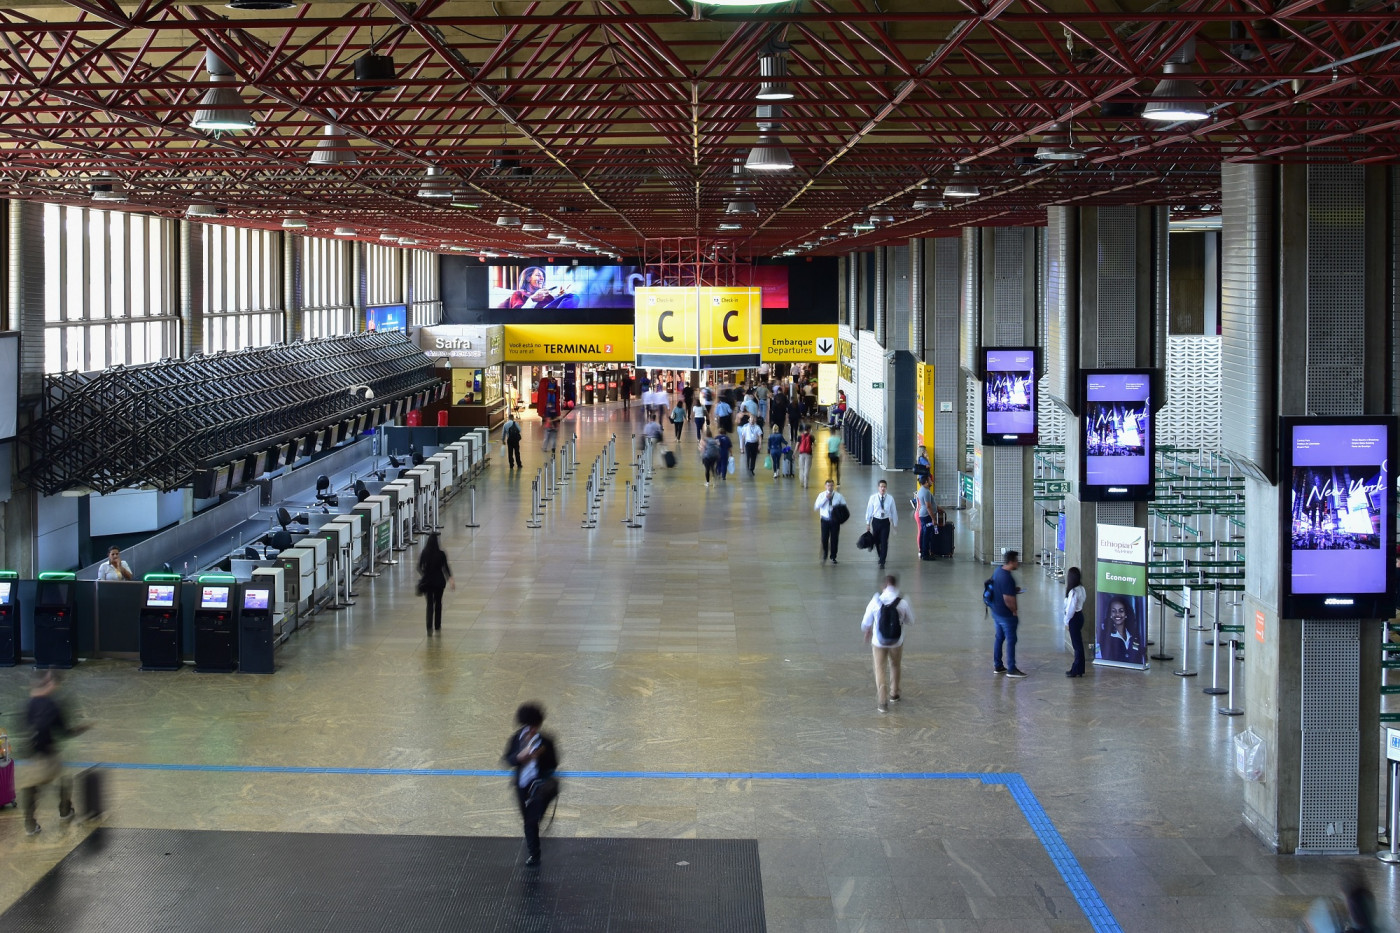 Aeroporto de Guarulhos